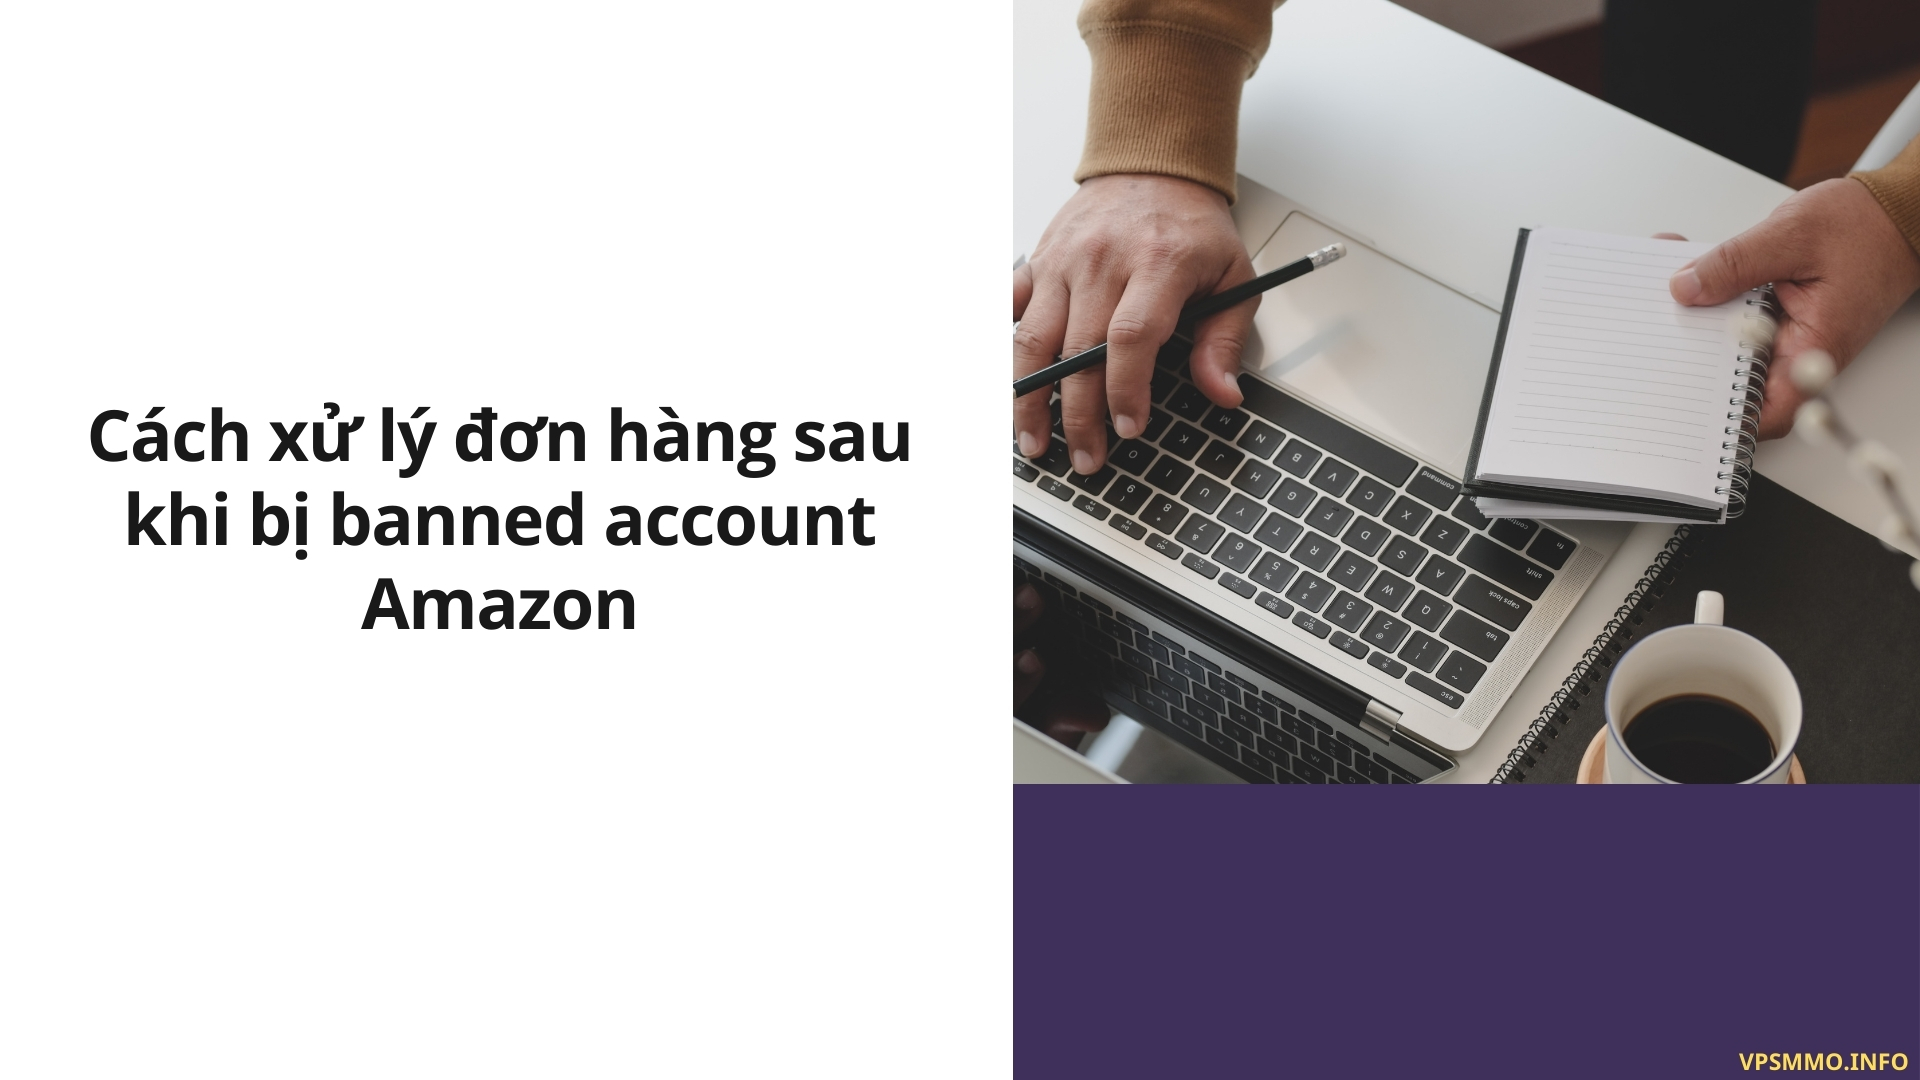 Cách xử lý đơn hàng sau khi bị banned account Amazon